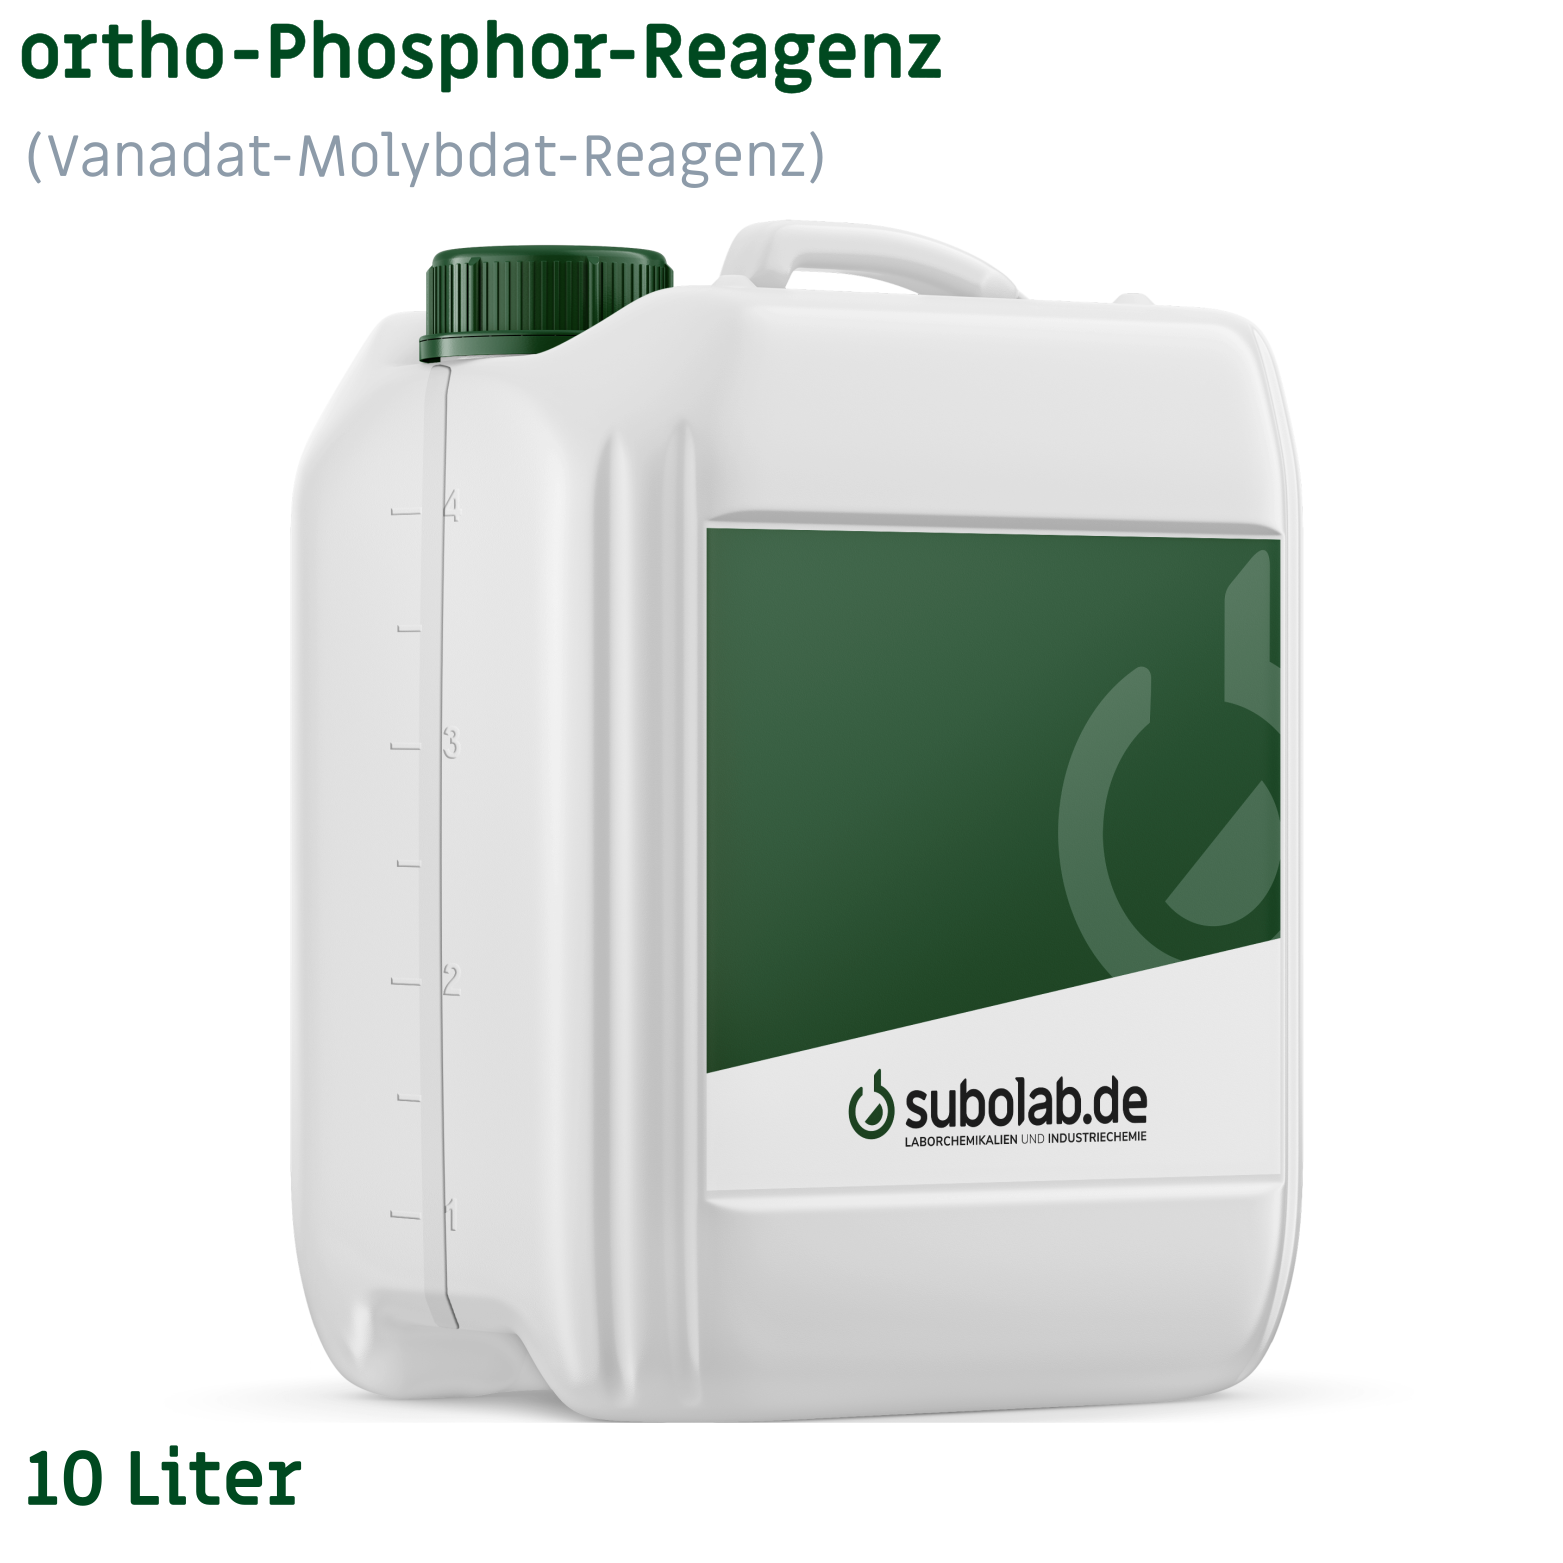 Bild von ortho - Phosphor - Reagenz (Vanadat-Molybdat-Reagenz) (10 Liter)